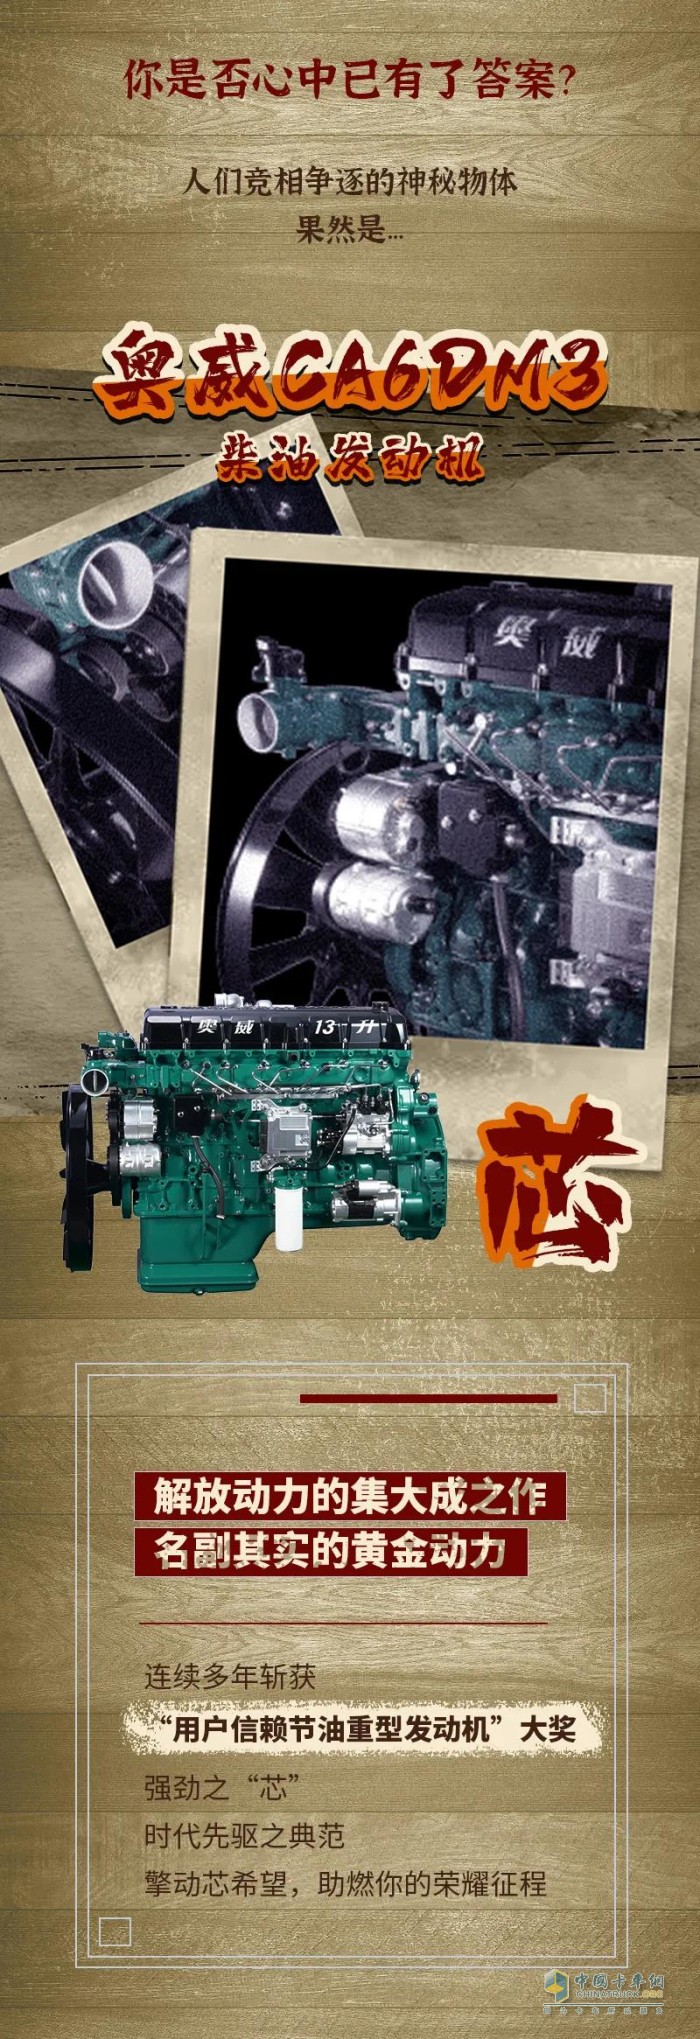 解放动力 发动机 奥威CA6DM3